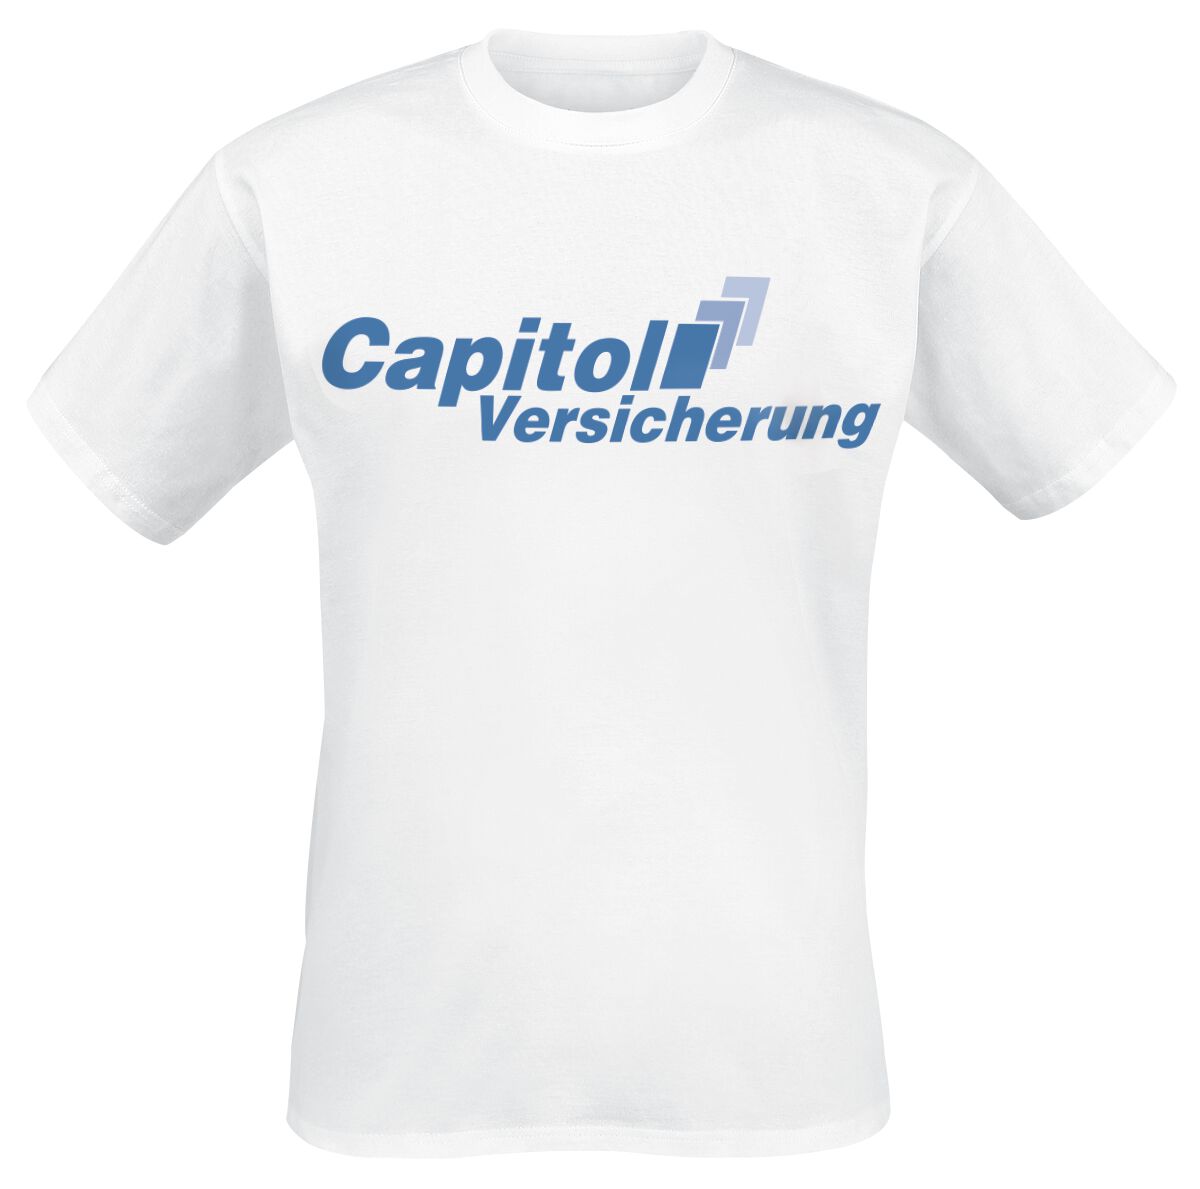 Stromberg T-Shirt - Capitol Versicherung - XXL bis 4XL - für Männer - Größe 4XL - weiß